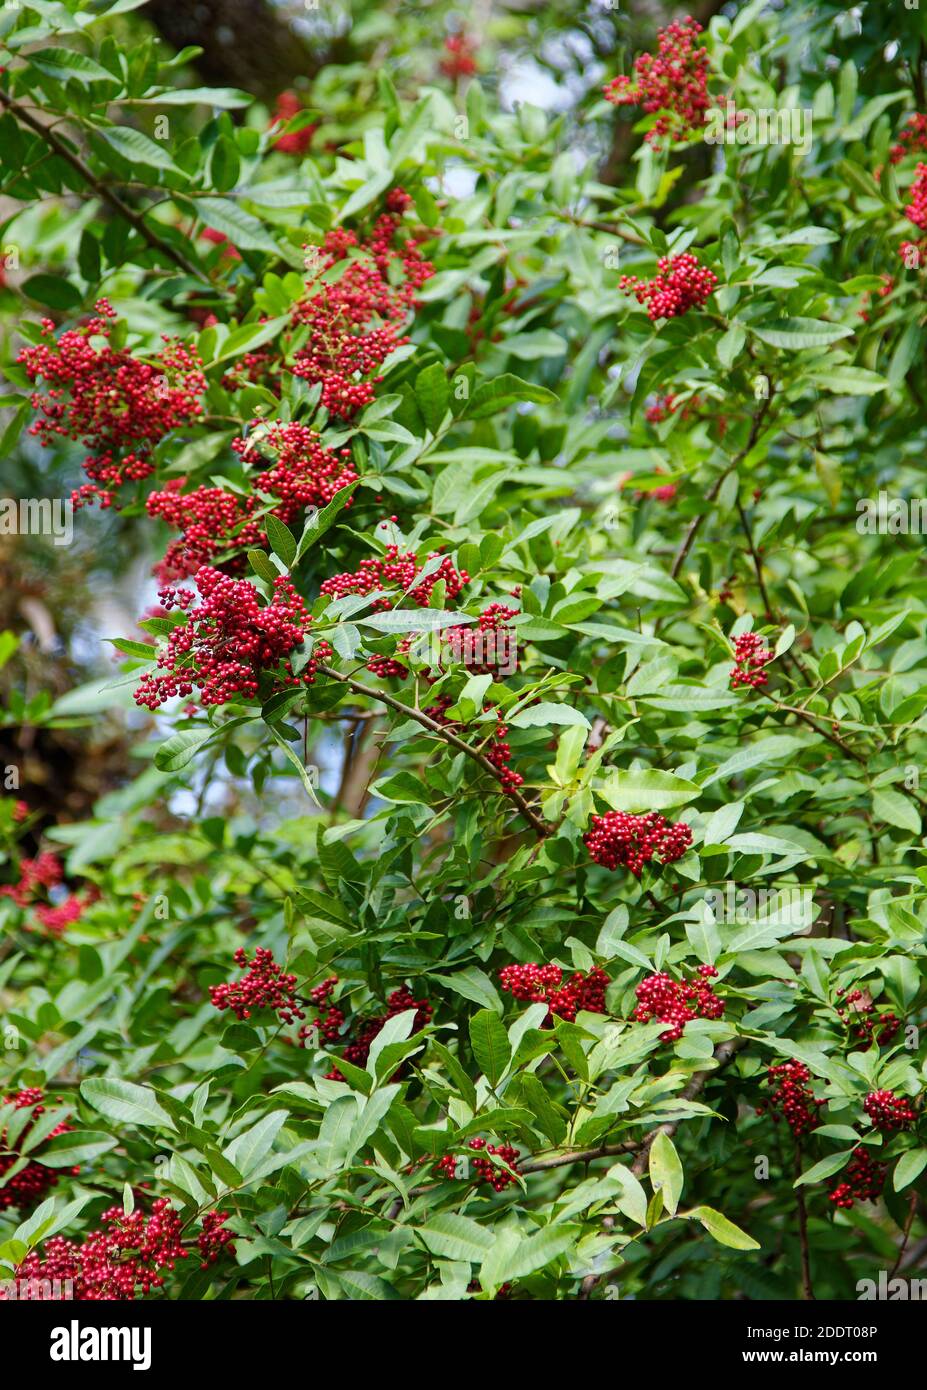 Dahoon Holly, Ilex cassine, pianta femminile, bacche rosso brillante, grappoli, foglie verdi oblunghe, nativo della Florida, albero, natura Foto Stock